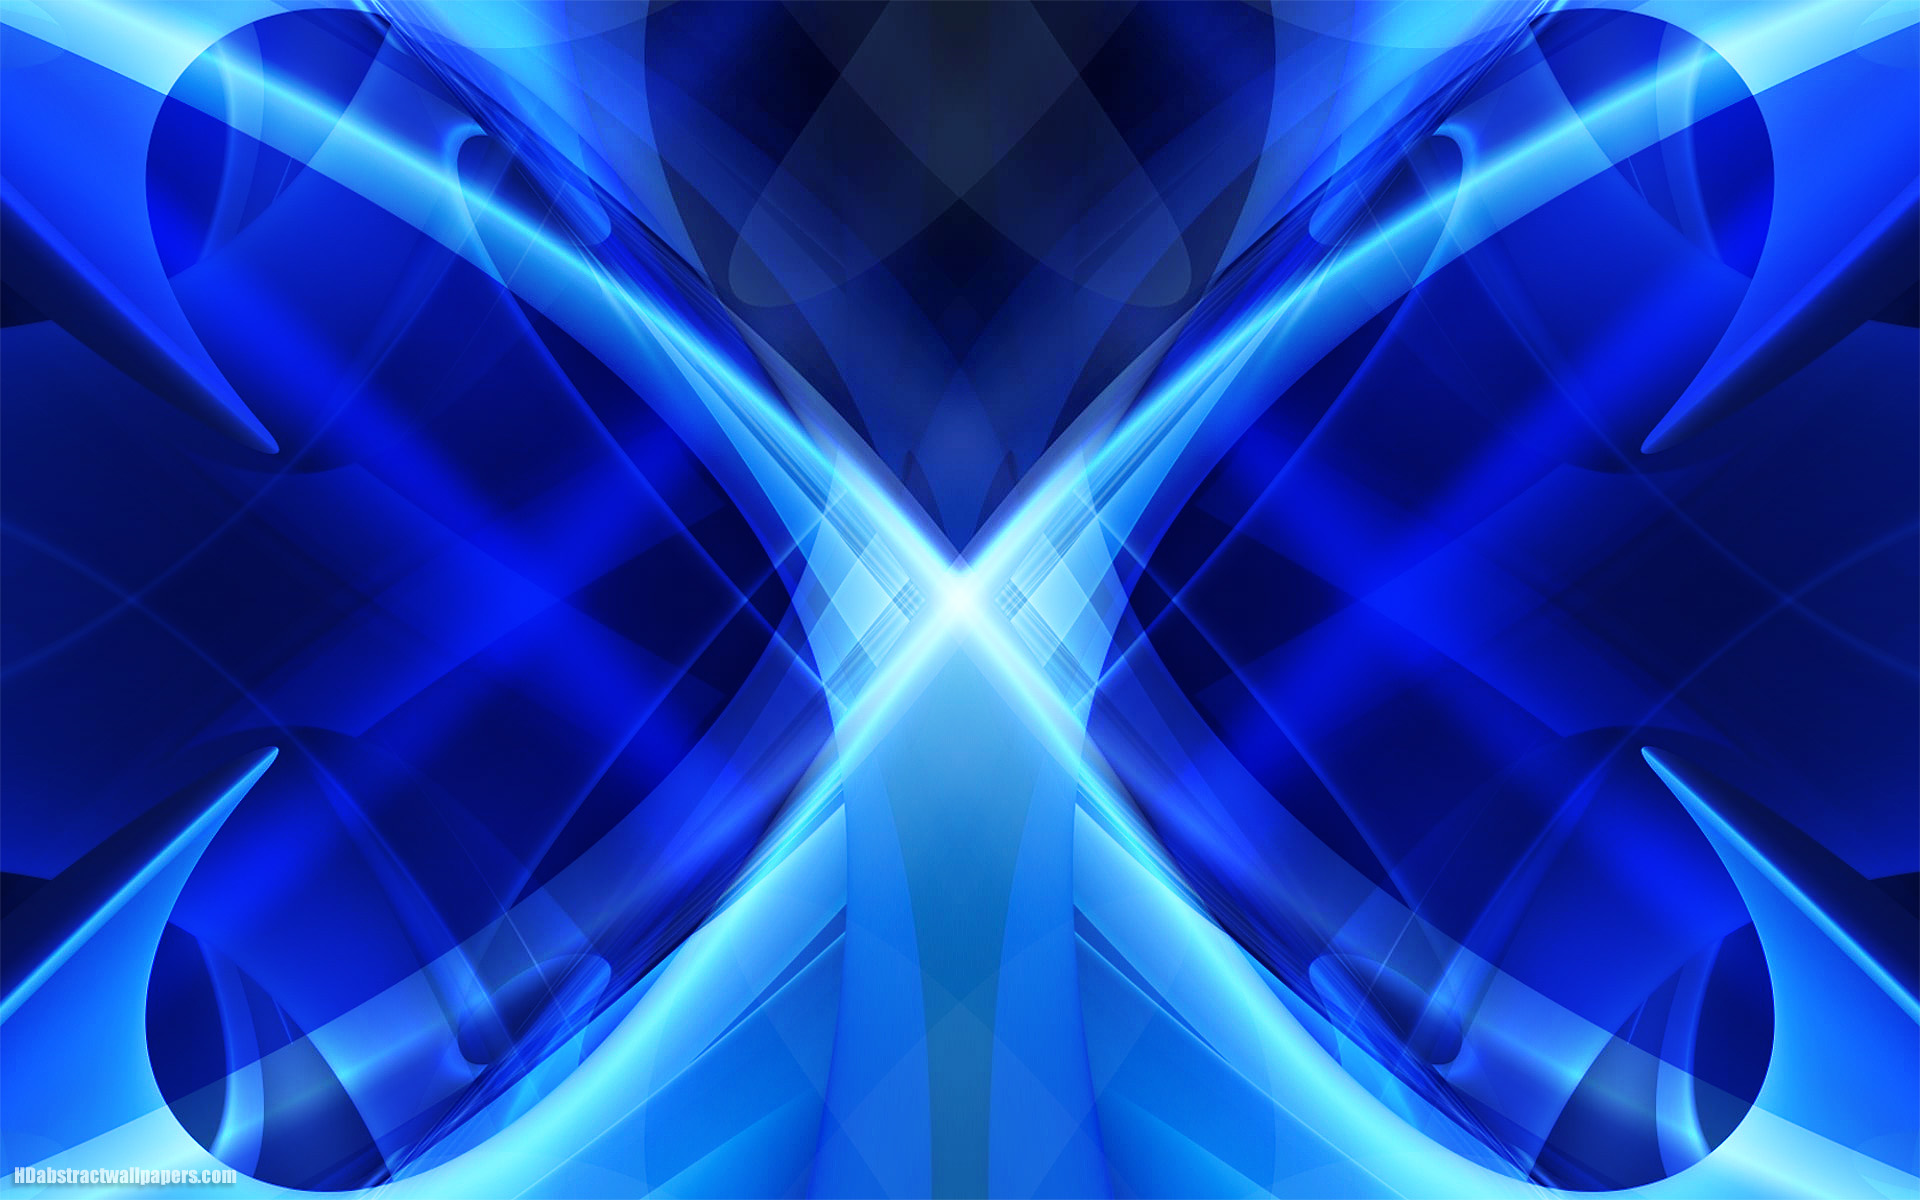 papel pintado azul moderno,azul,azul eléctrico,azul cobalto,ligero,simetría